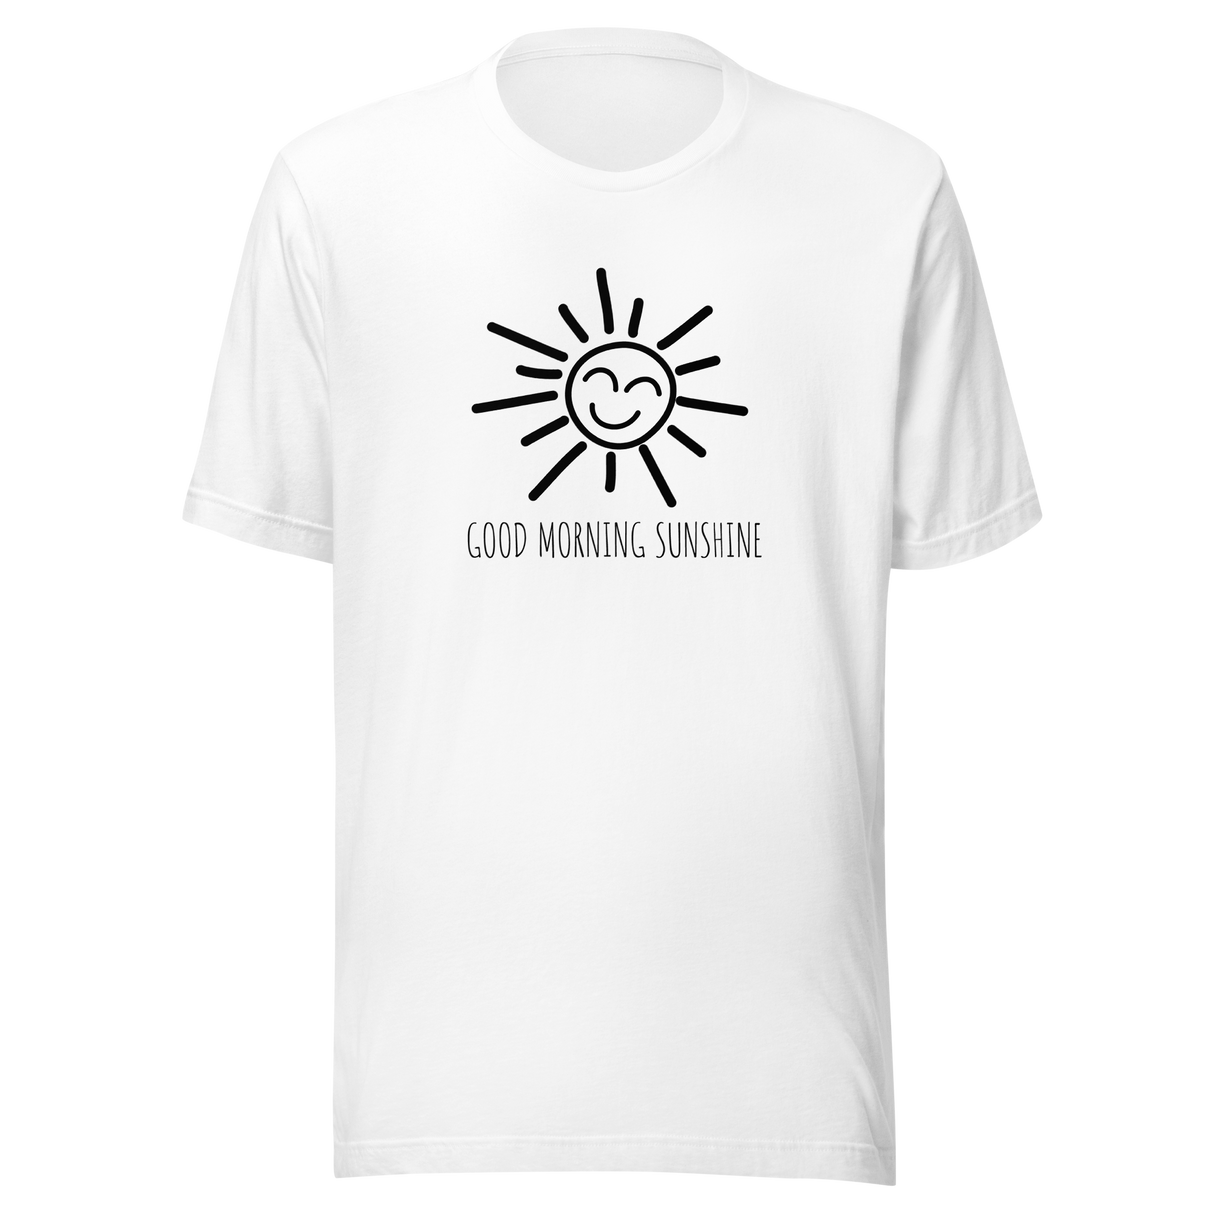 good-morning-sunshine-sunshine-tee-sun-t-shirt-good-morning-tee-hello-t-shirt-friendly-tee#color_white